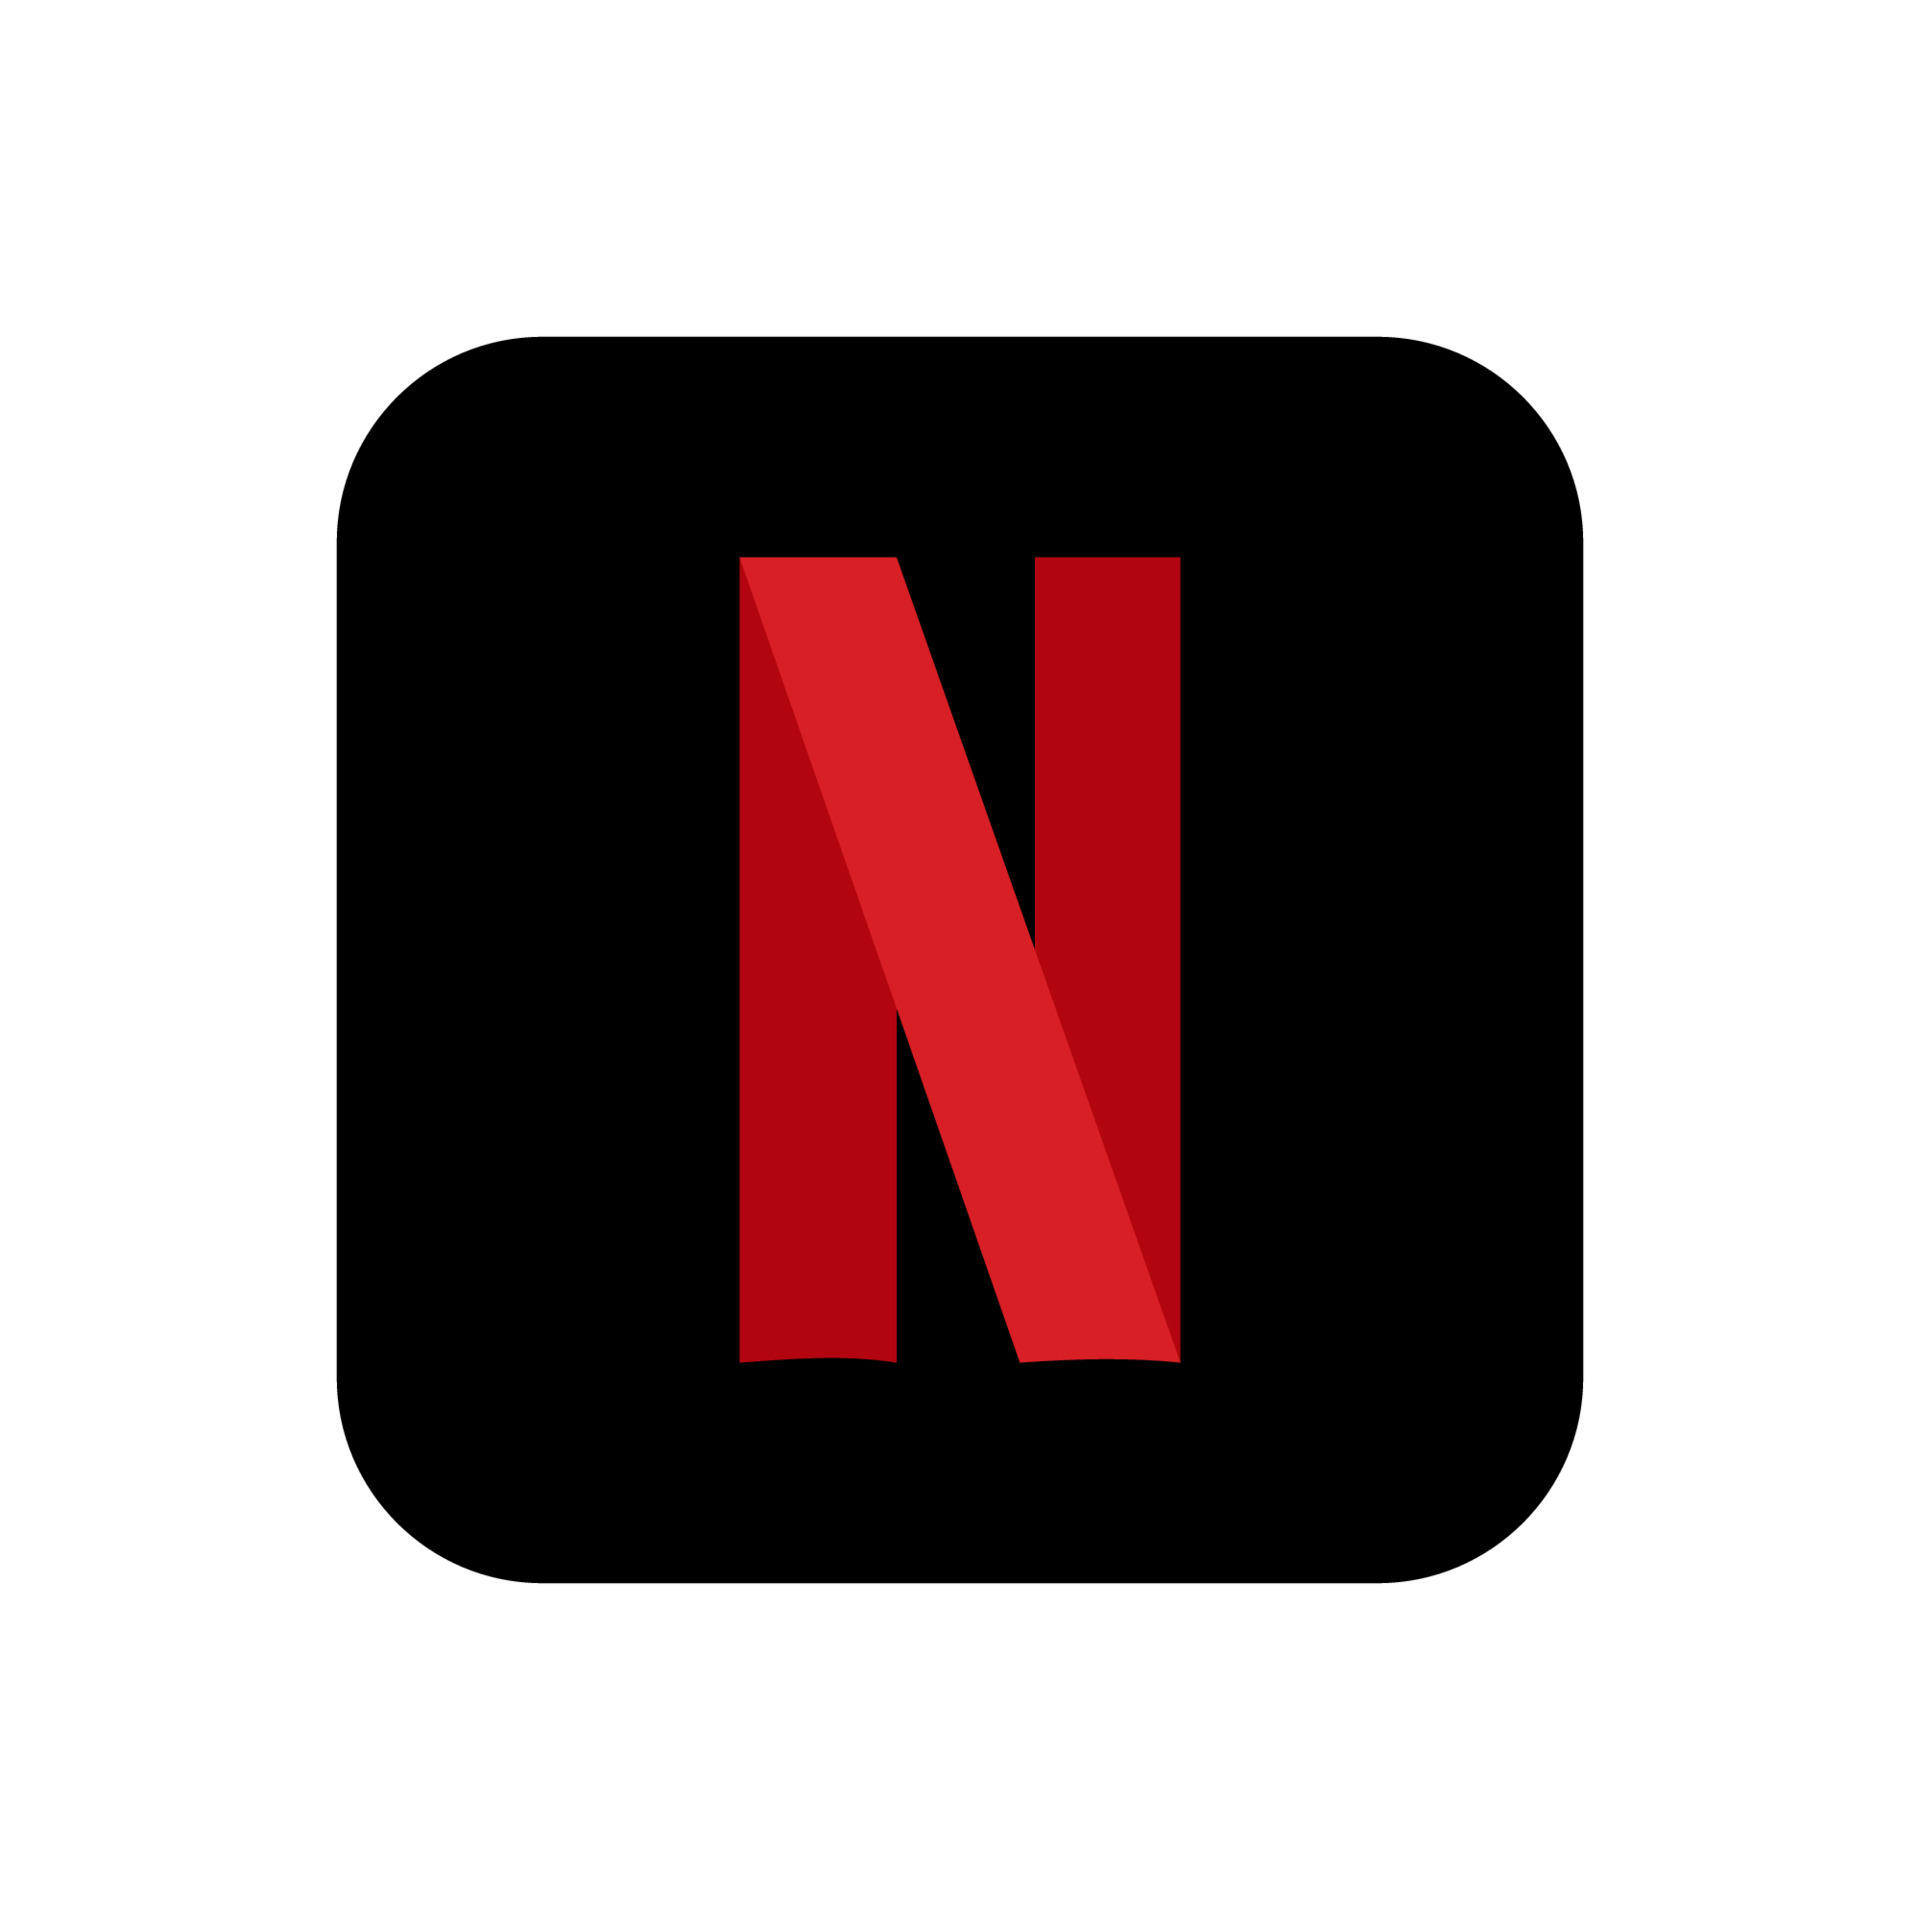 Netflix logo icon vector: Hãy xem hình ảnh logo Netflix được tái tạo trong một công cụ vector để cảm nhận sự độc đáo và tinh tế của thương hiệu này. Hình ảnh sẽ khiến bạn muốn khám phá thêm về Netflix.